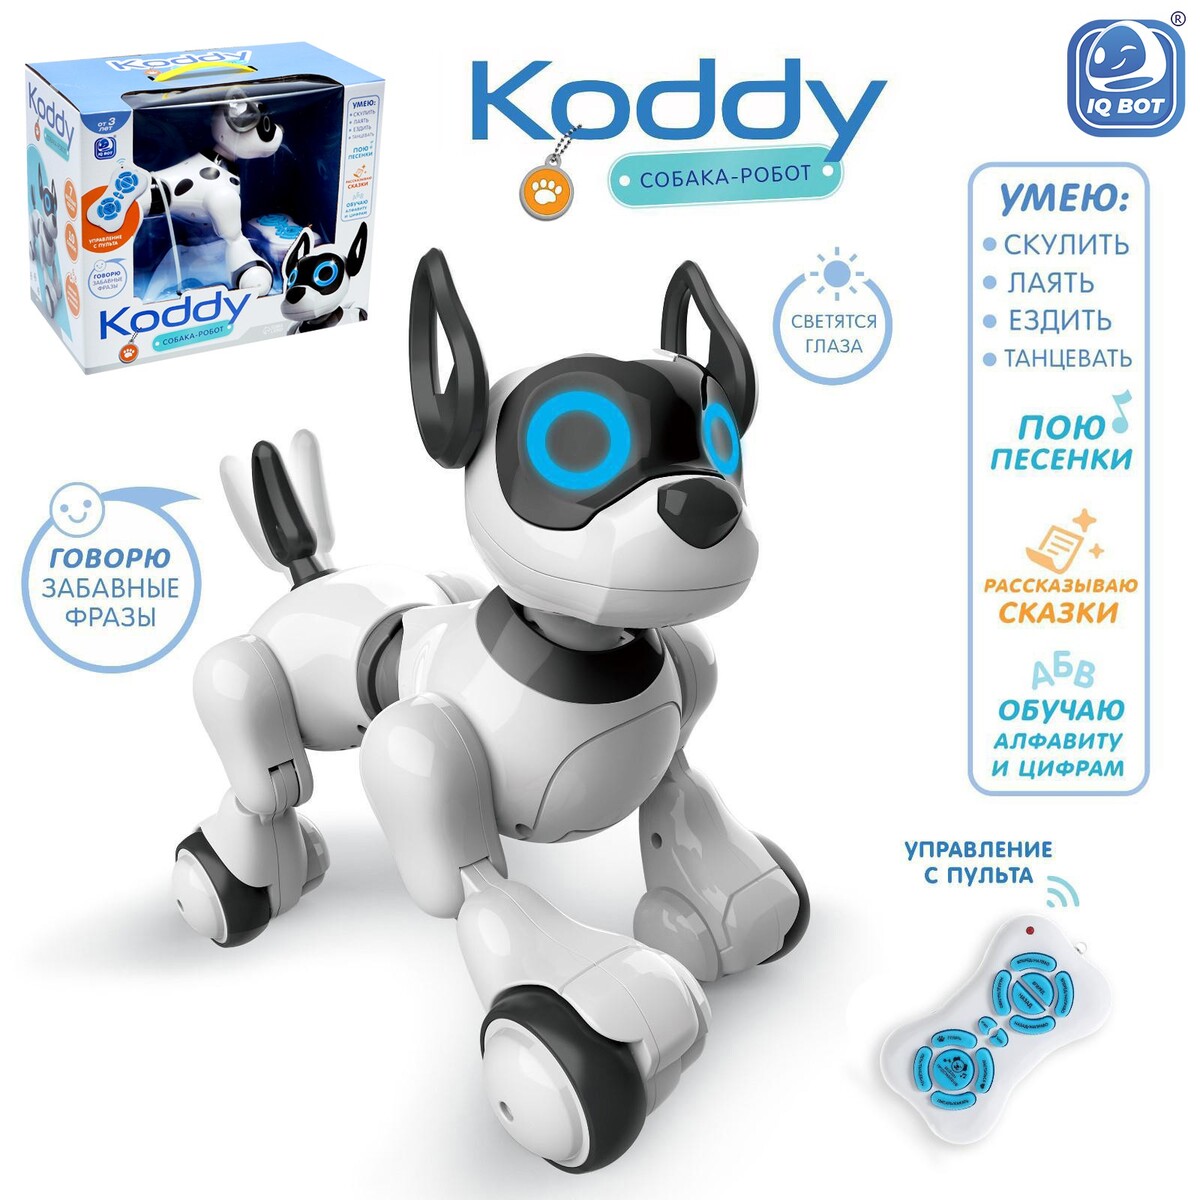 Робот собака koddy iq bot, на пульте управления, интерактивный: звук, свет, танцующий, музыкальный, на аккумуляторе радиоуправляемый робот динозавр grace house на пульте управления